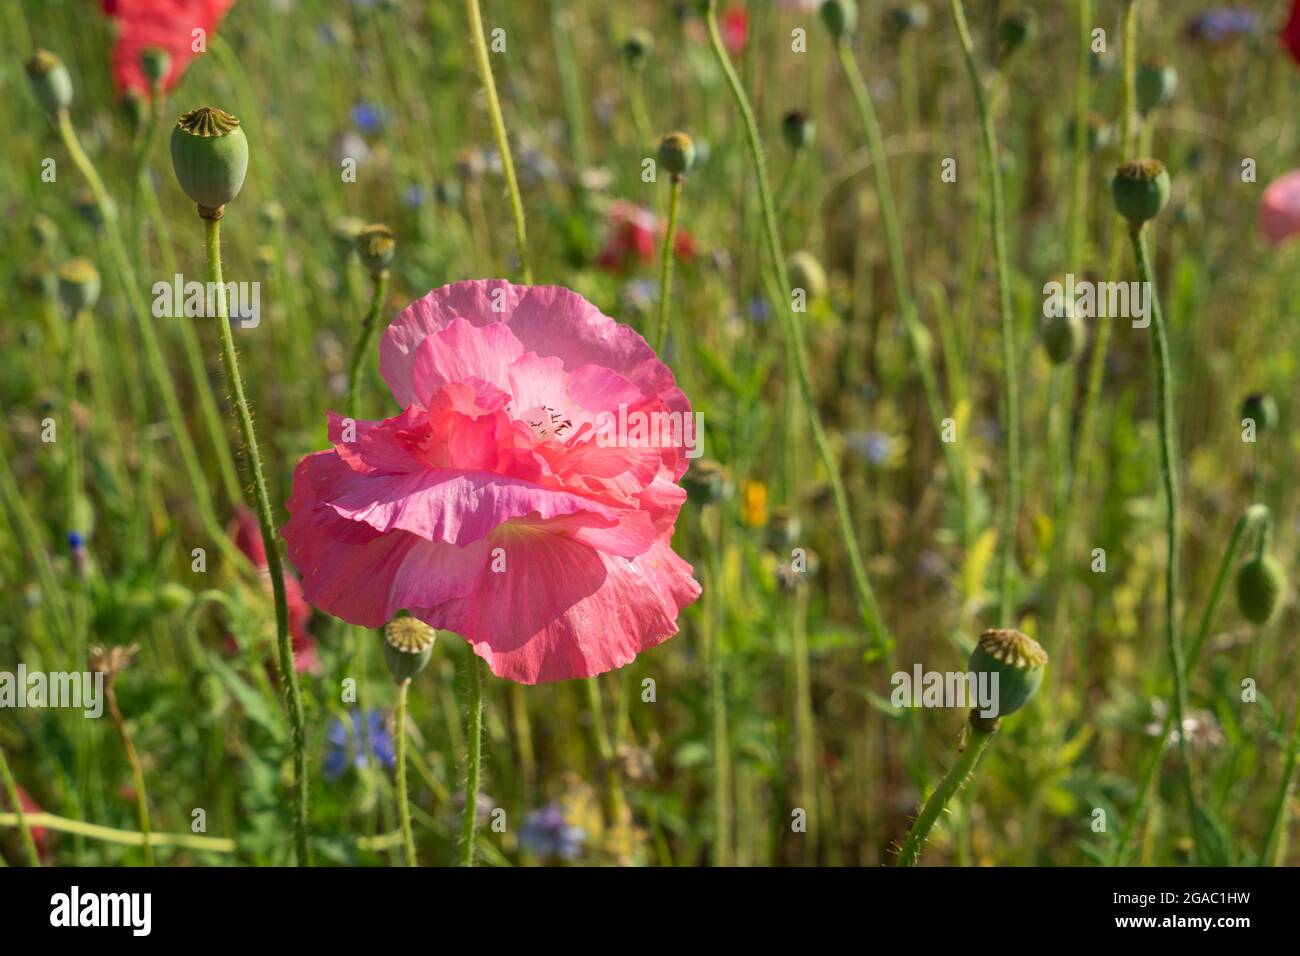 Schöne rosa Mohnblume und grüne Wiese im Sommer Botanik Nahaufnahme Stockfoto